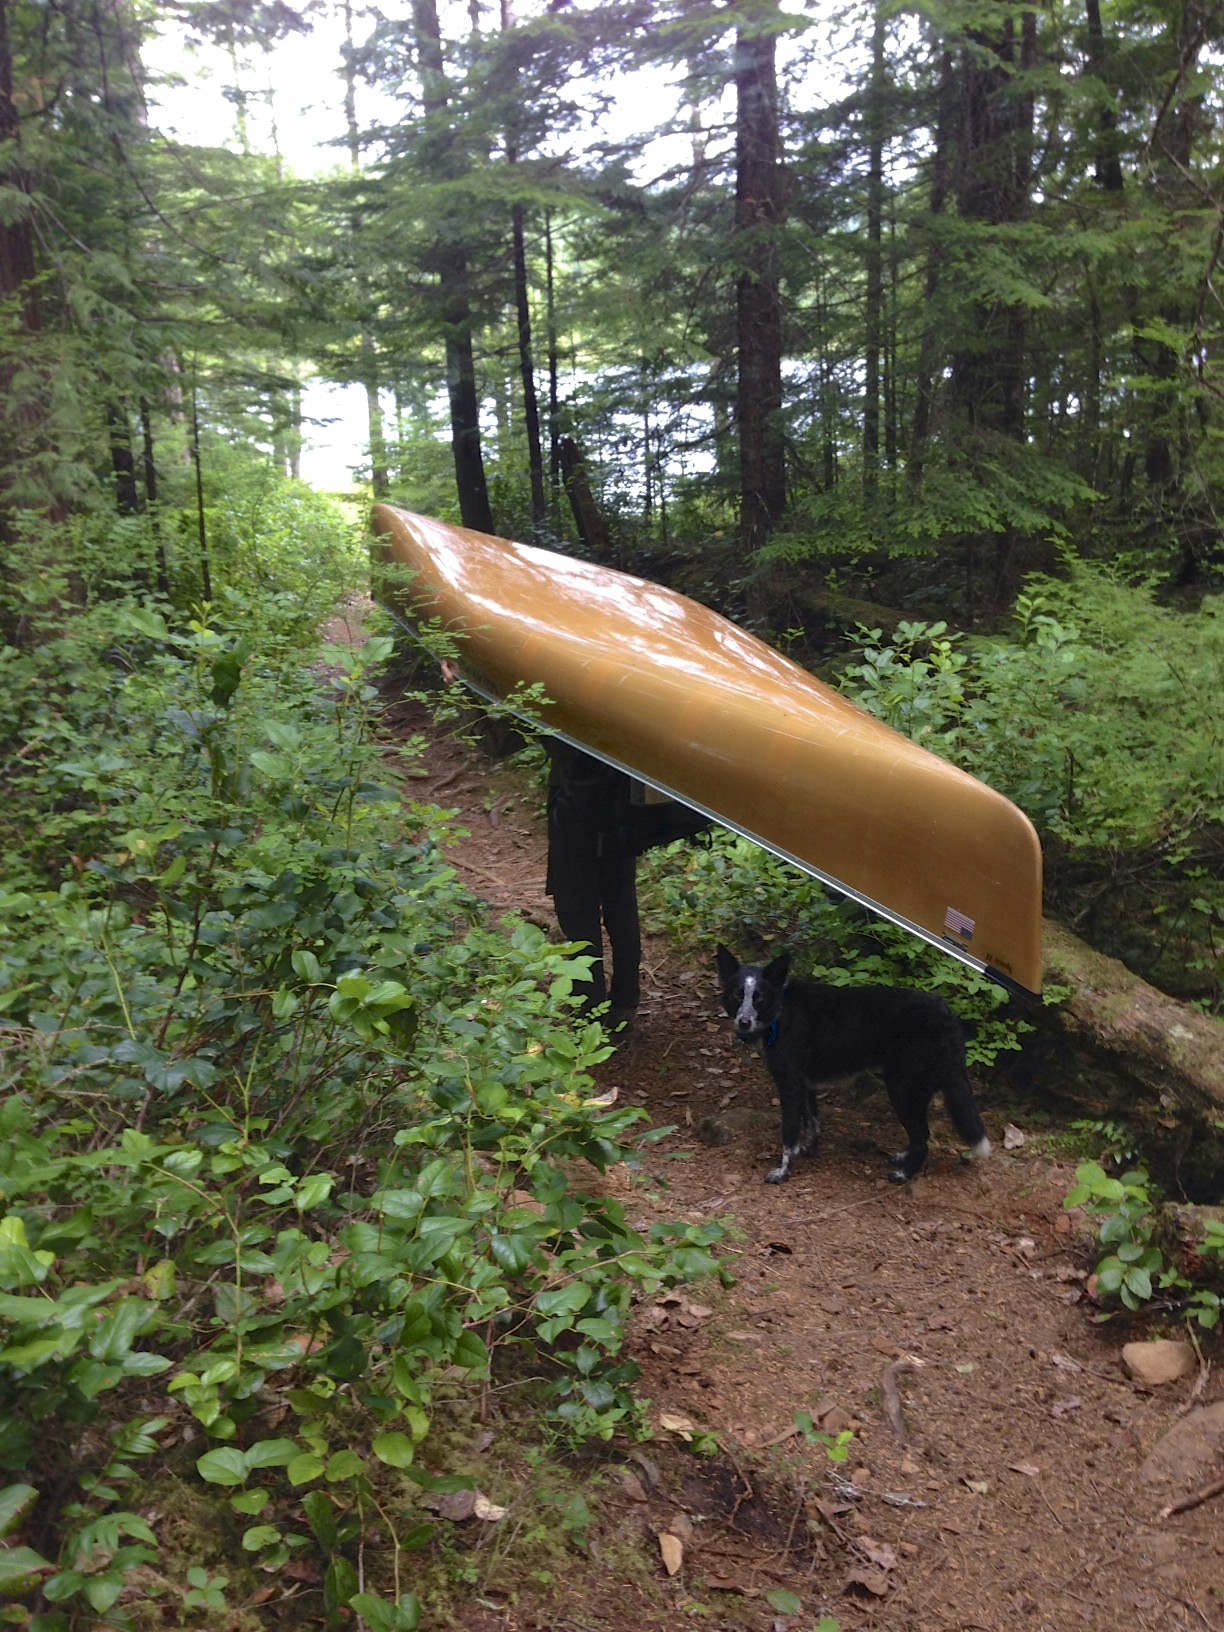 Tucker herding the canoe